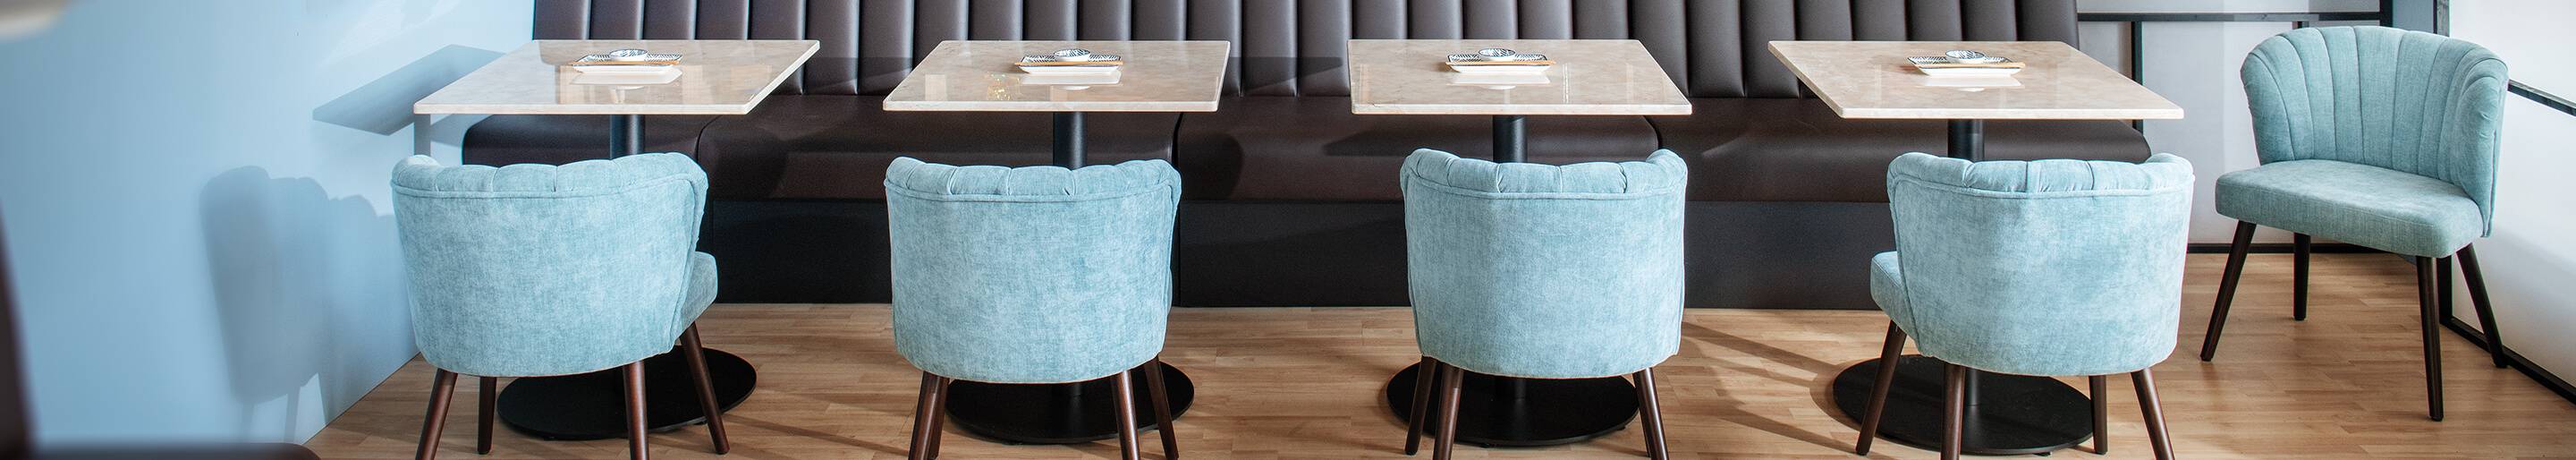 Bequeme Sessel für Ihre Gastronomie und Hotellerie